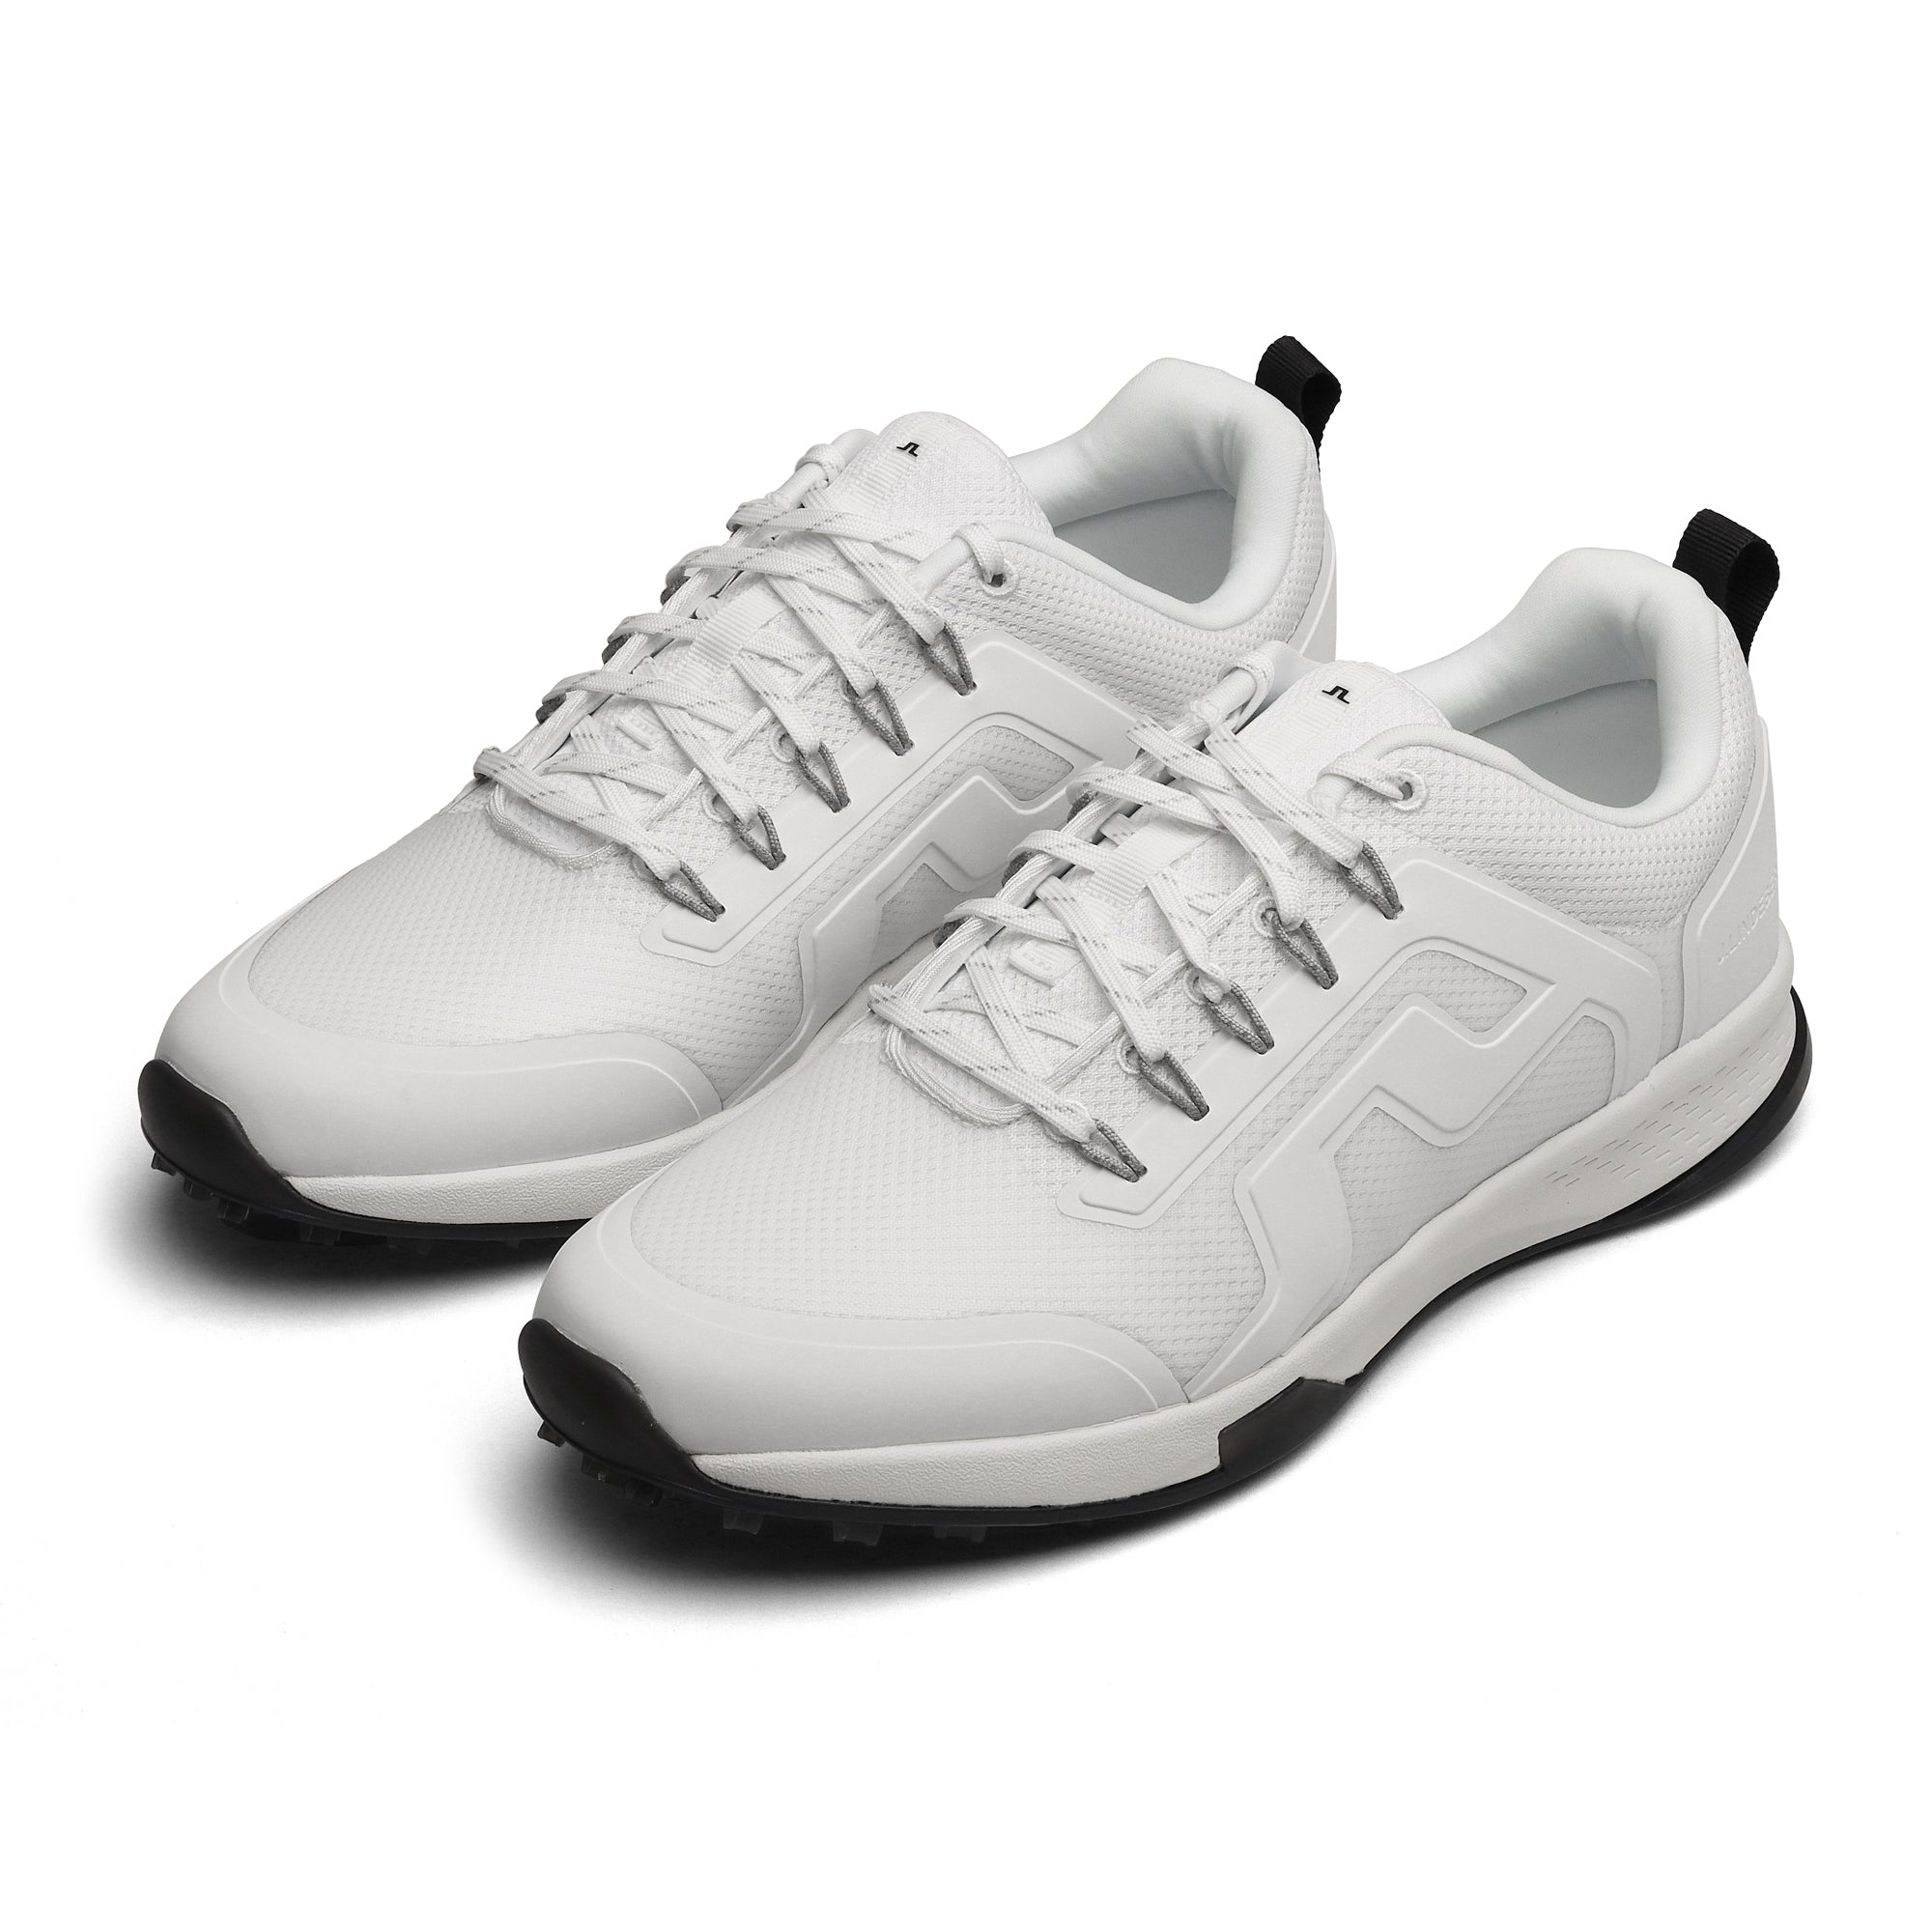 J.Lindeberg Range Finder Golf Shoes White 2